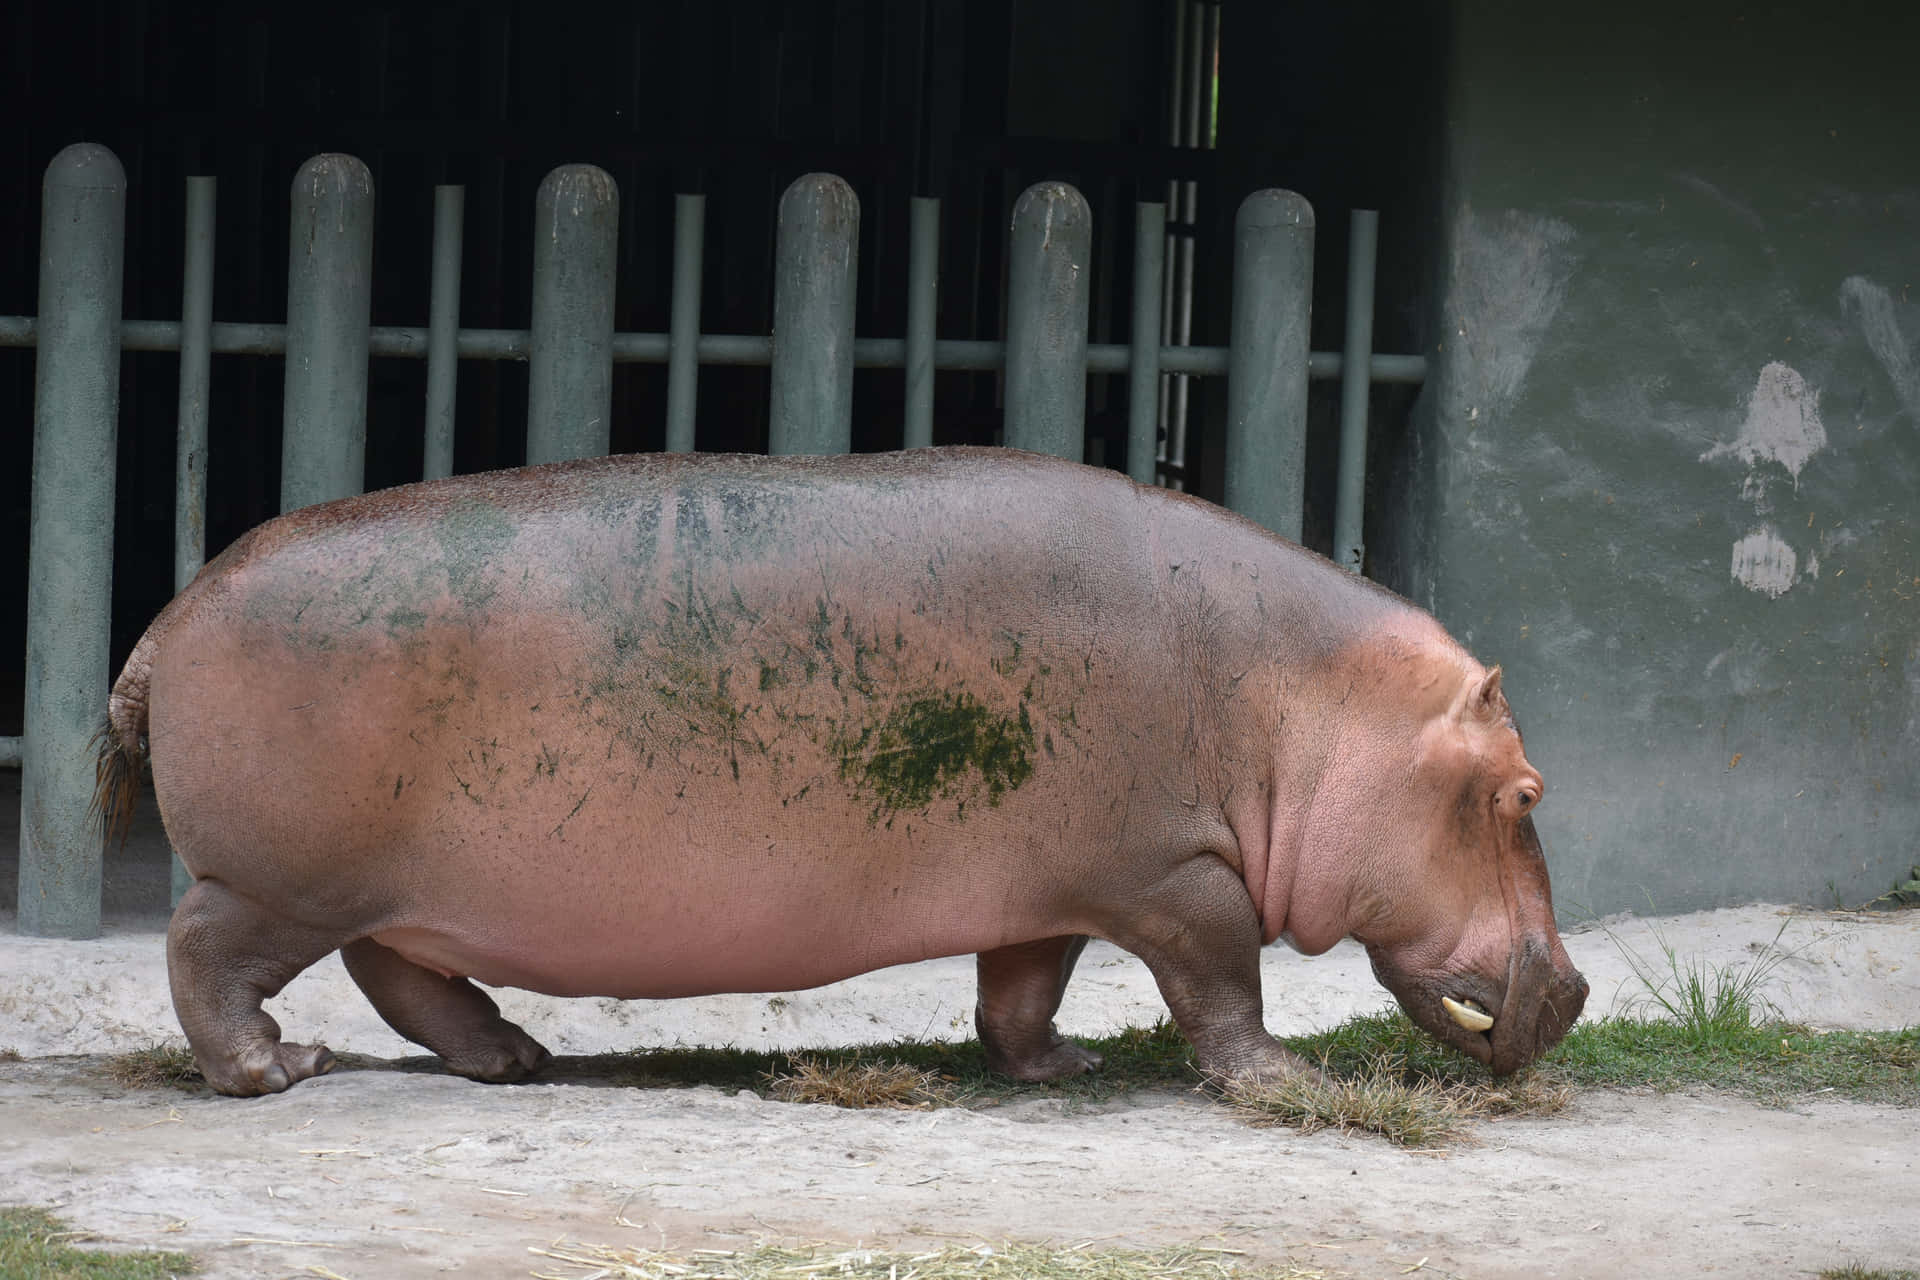 Imagende Un Hipopótamo Regordete Comiendo Hierba.